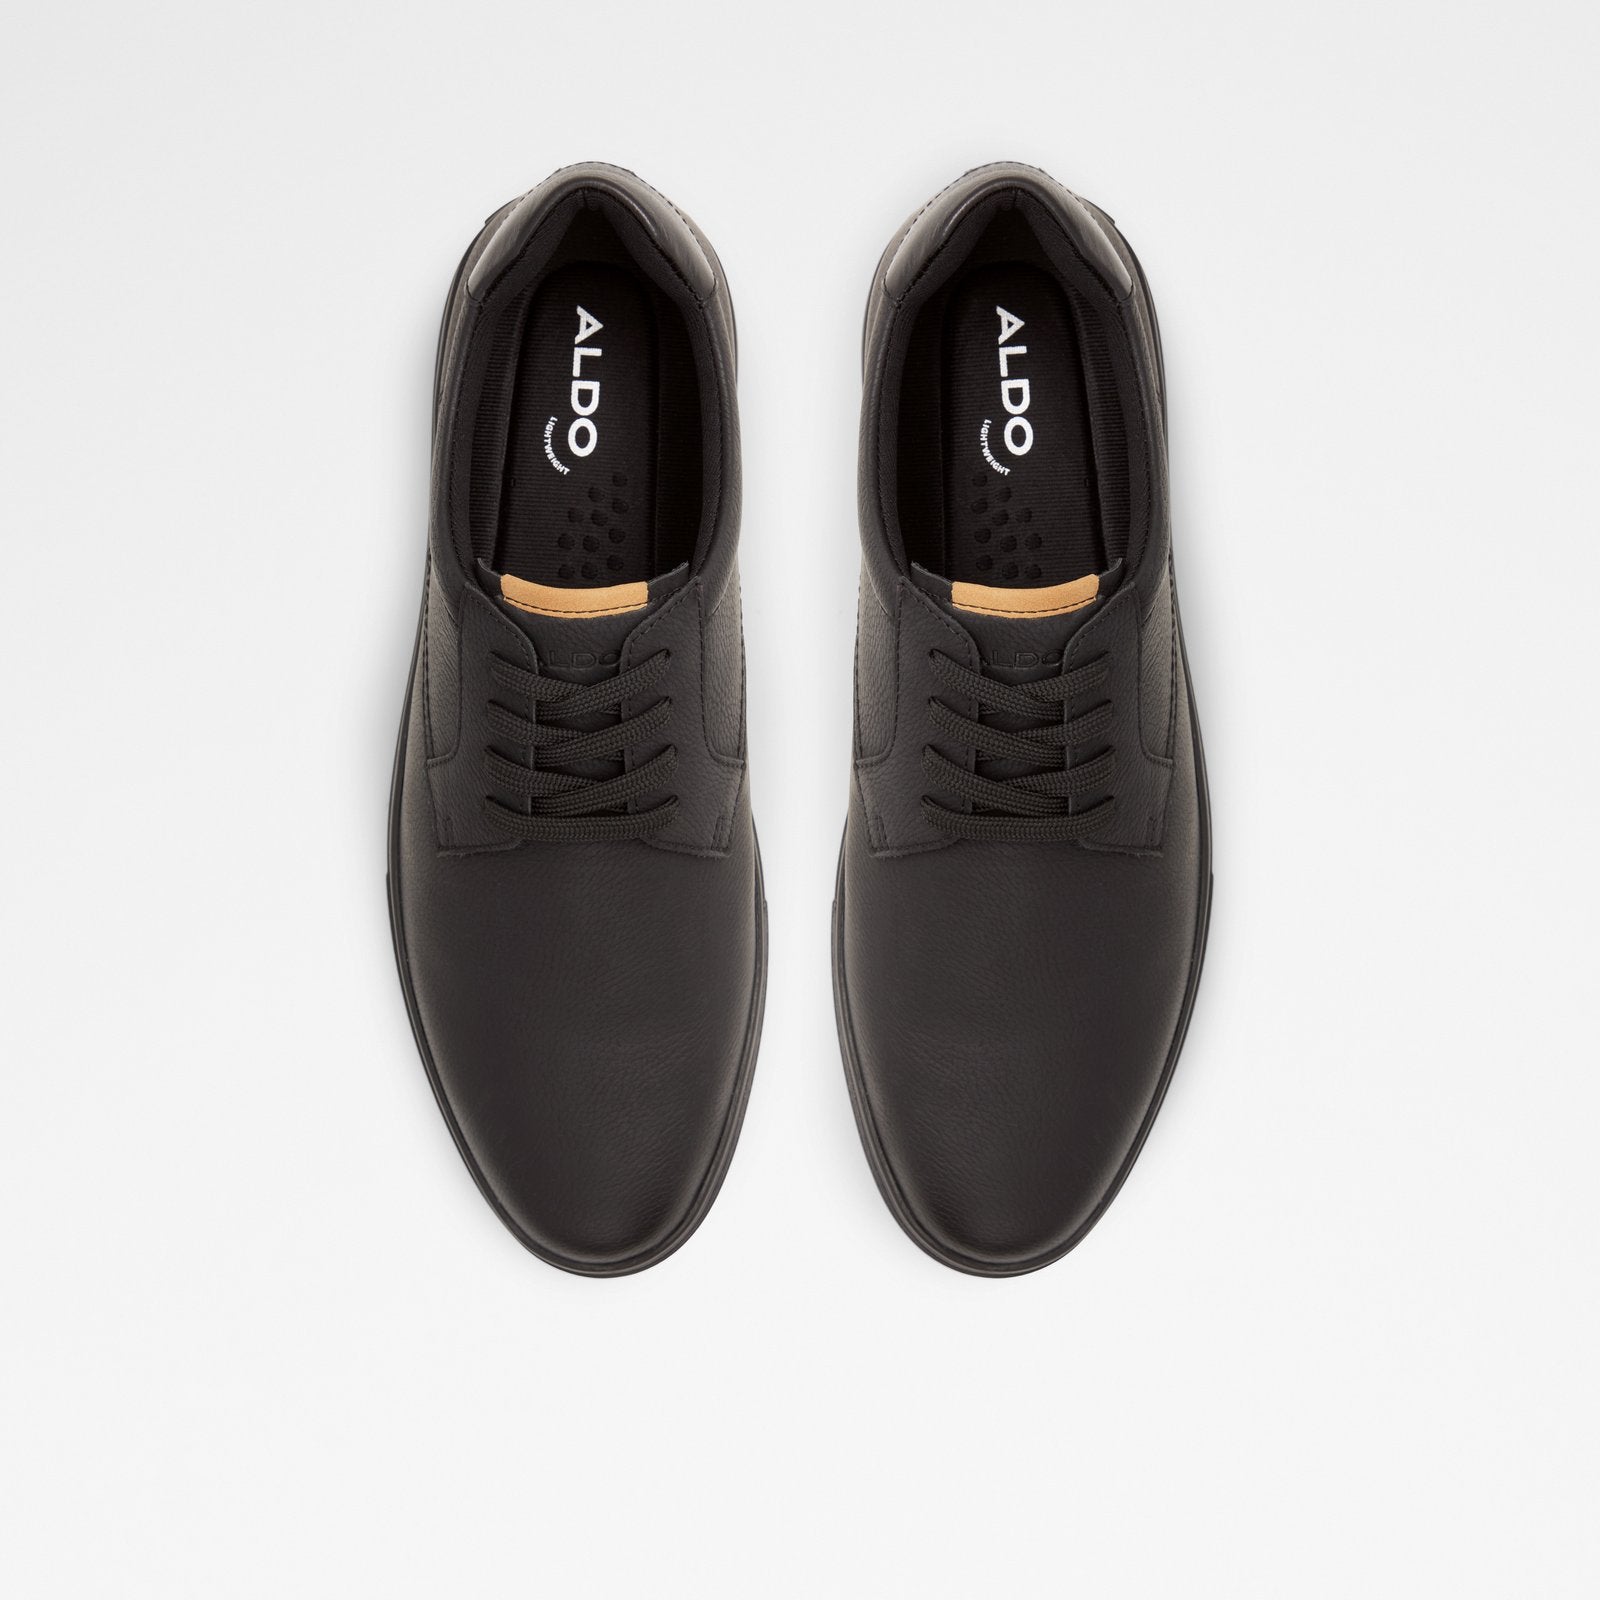 Adwup Men Shoes - Black - ALDO KSA